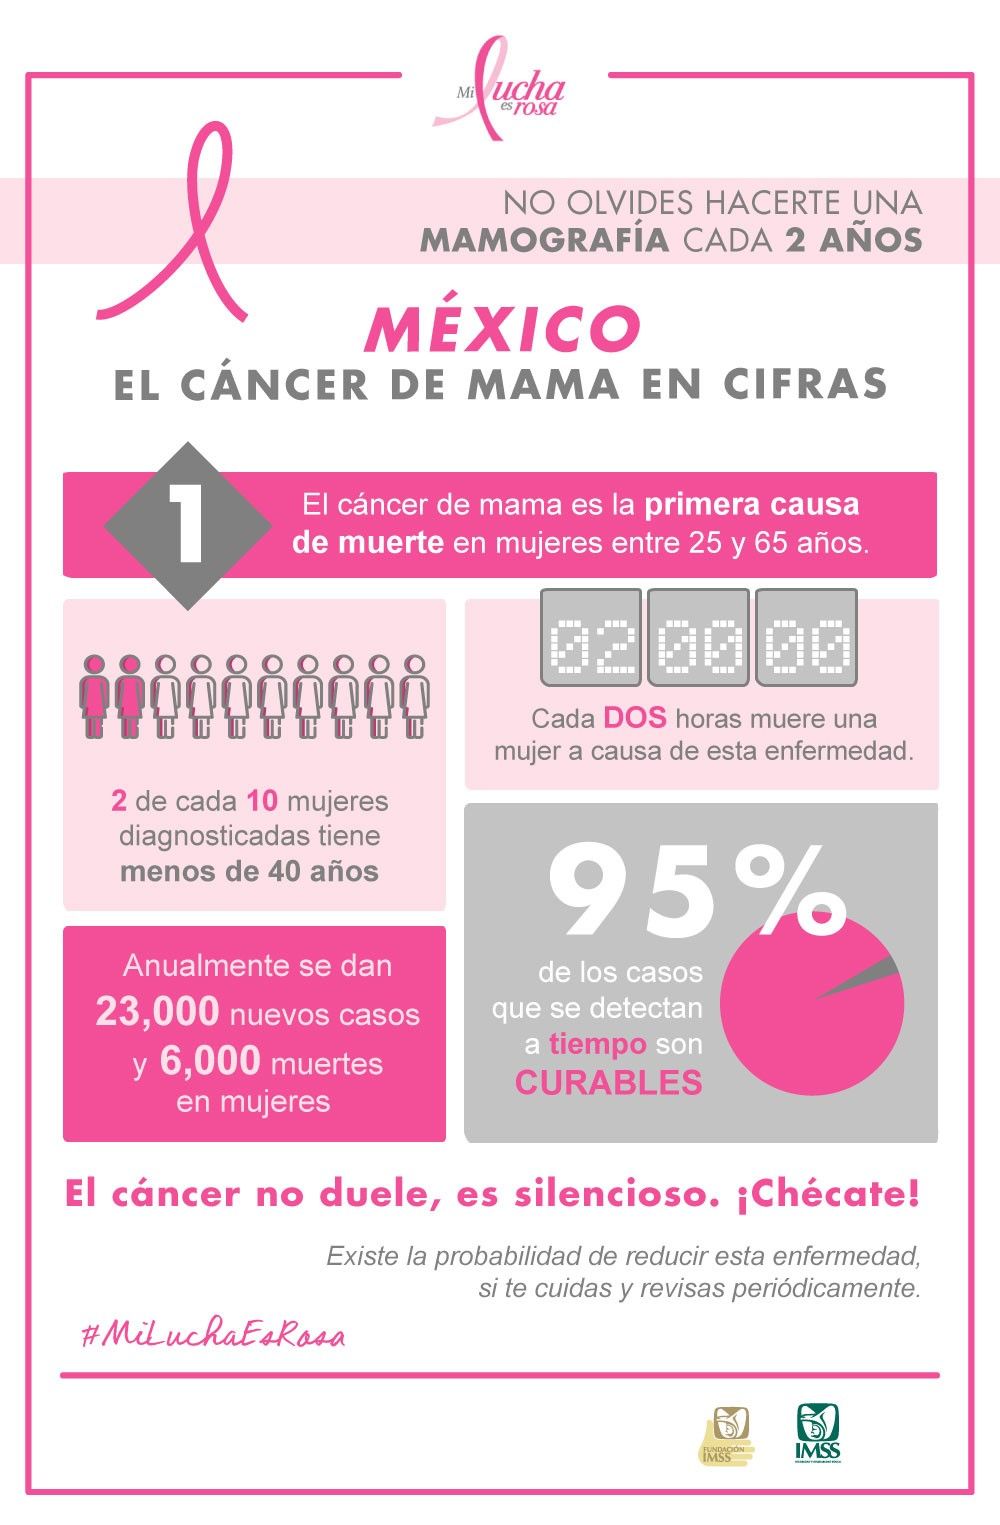 Fundación IMSS: El cáncer de mama en cifras